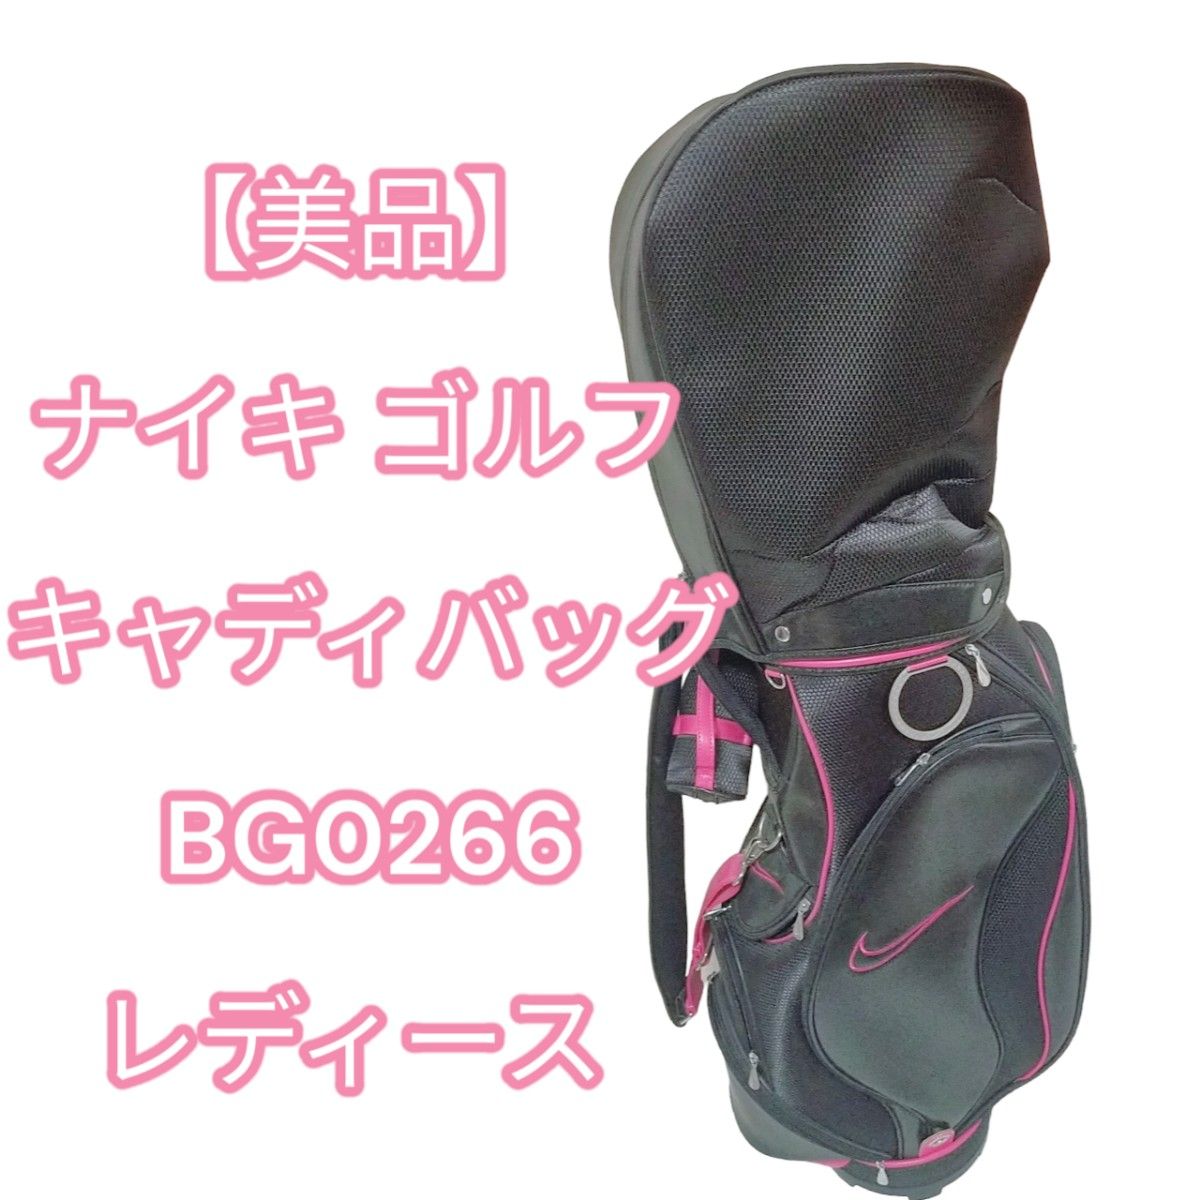 【美品】 ナイキ ゴルフ キャディバッグ BG0266 レディース